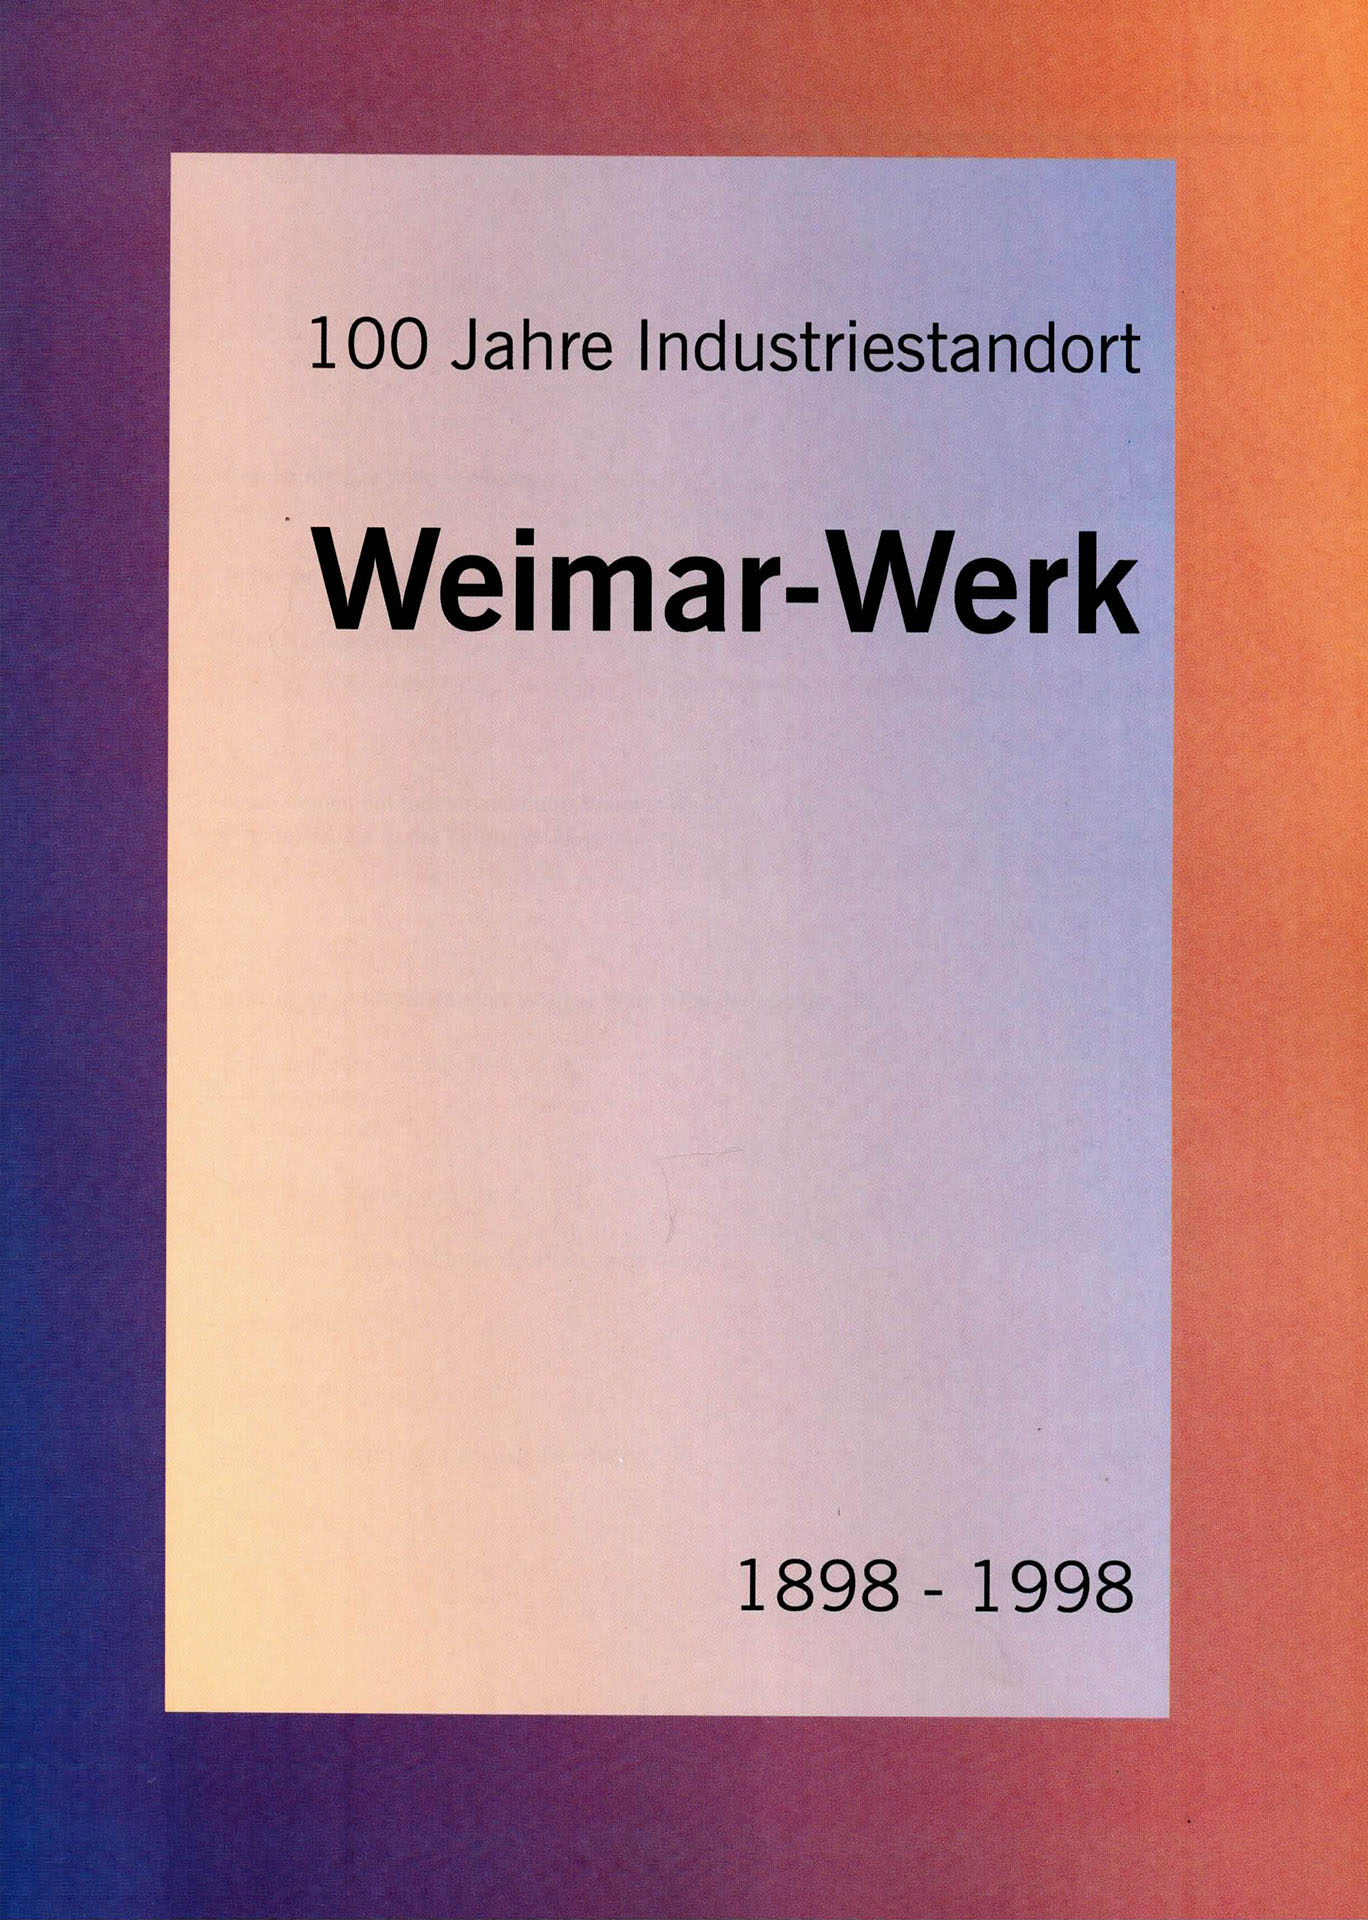 100 Jahre Industriestandort Weimar-Werk - Stadt Weimar